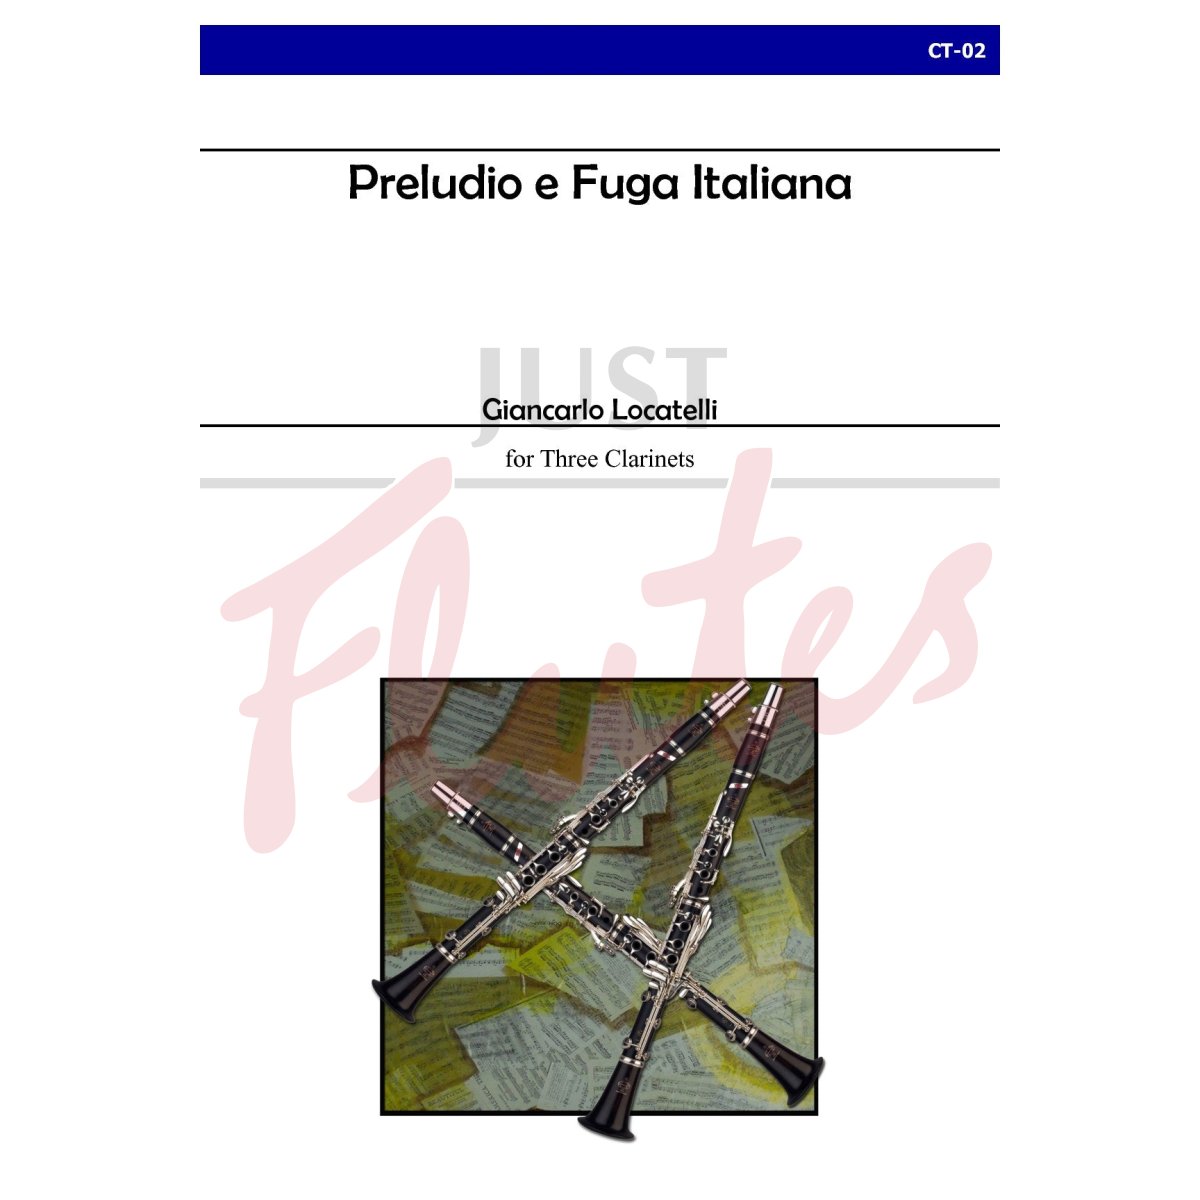 Preludio e Fuga Italiana for Clarinet Trio